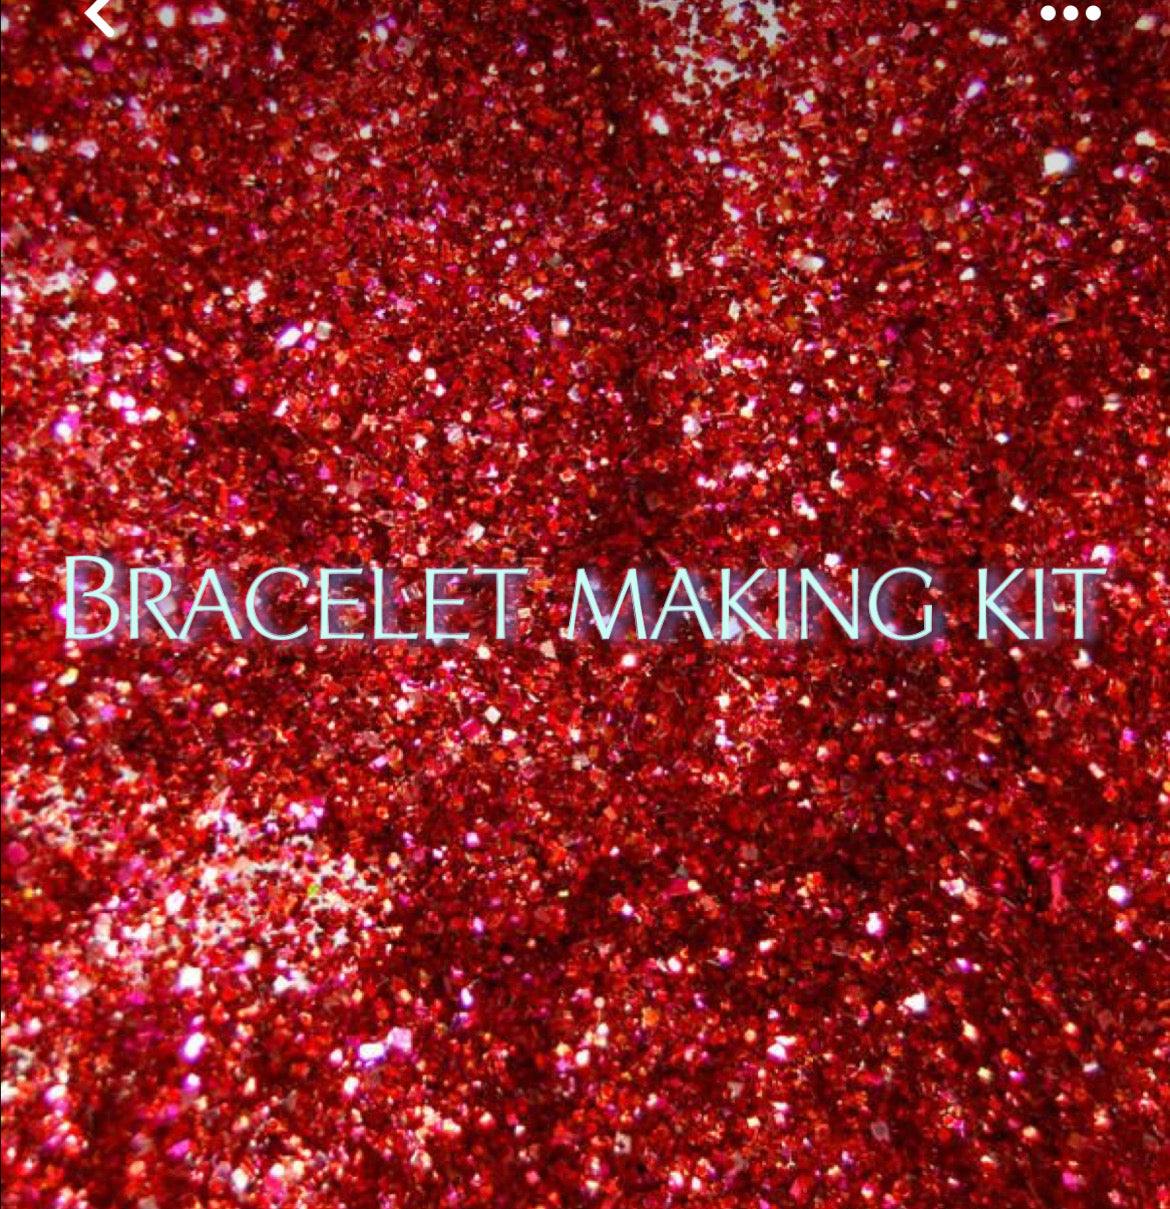 Bracelet making kit